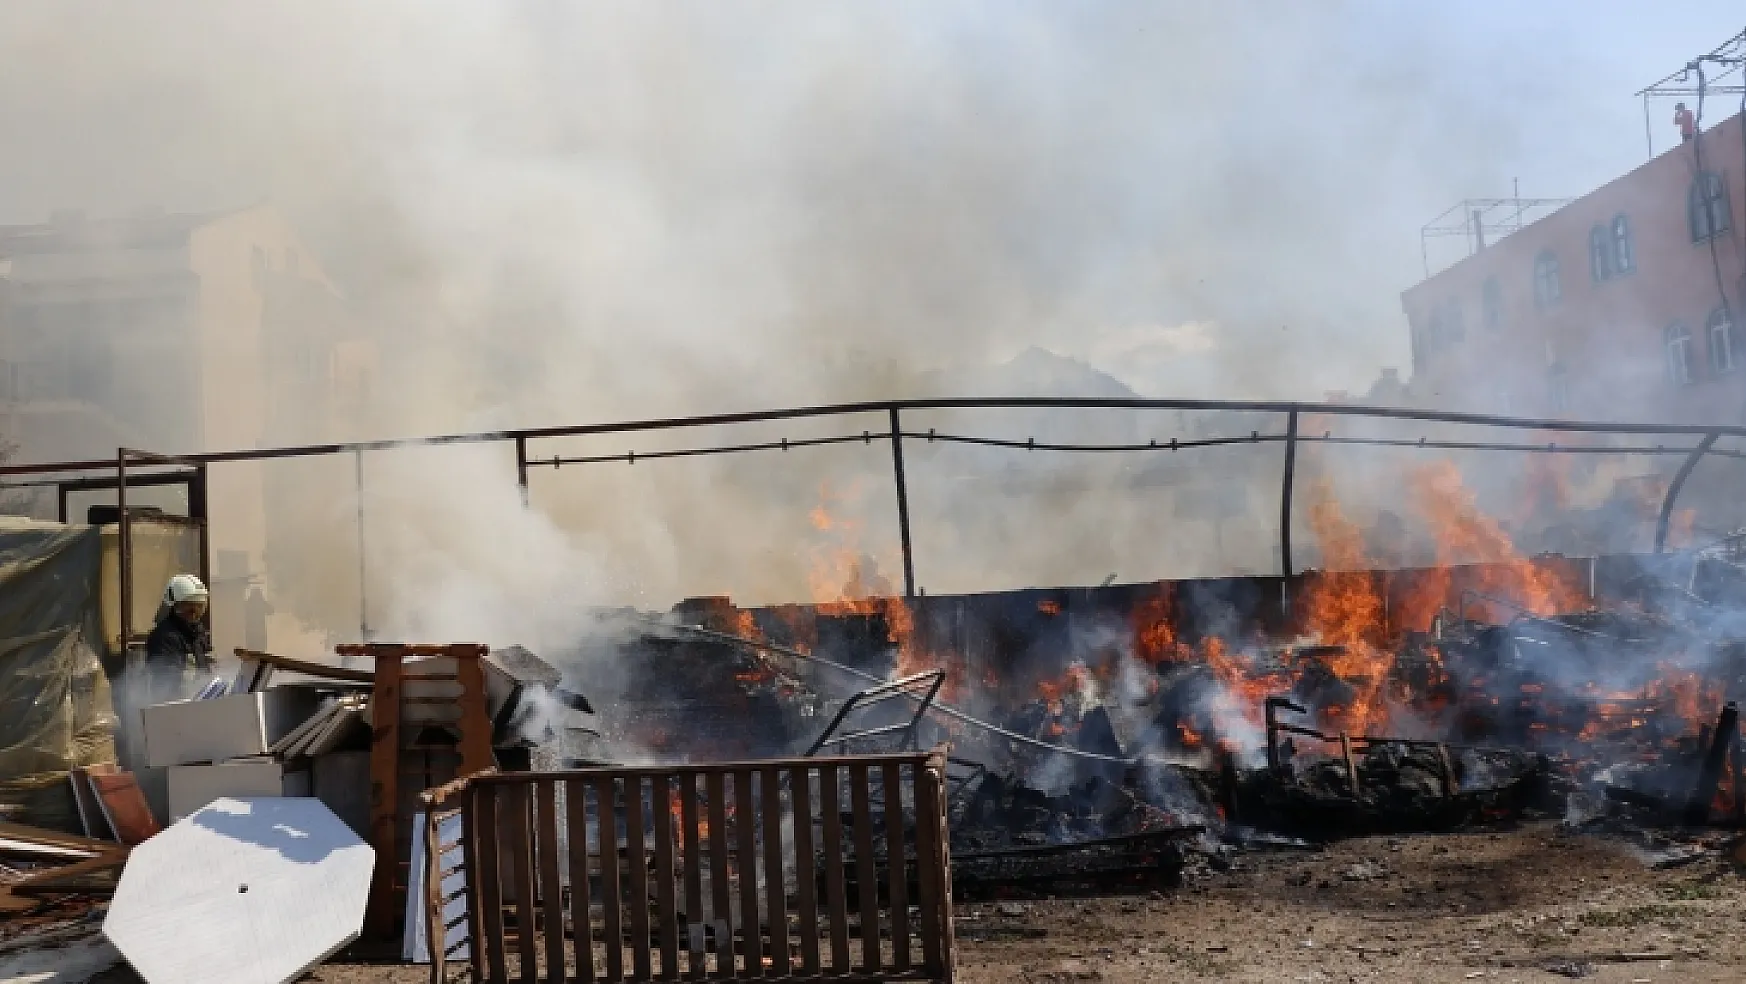 Fethiye'de ikinci el eşya mağazasının deposunda yangın çıktı